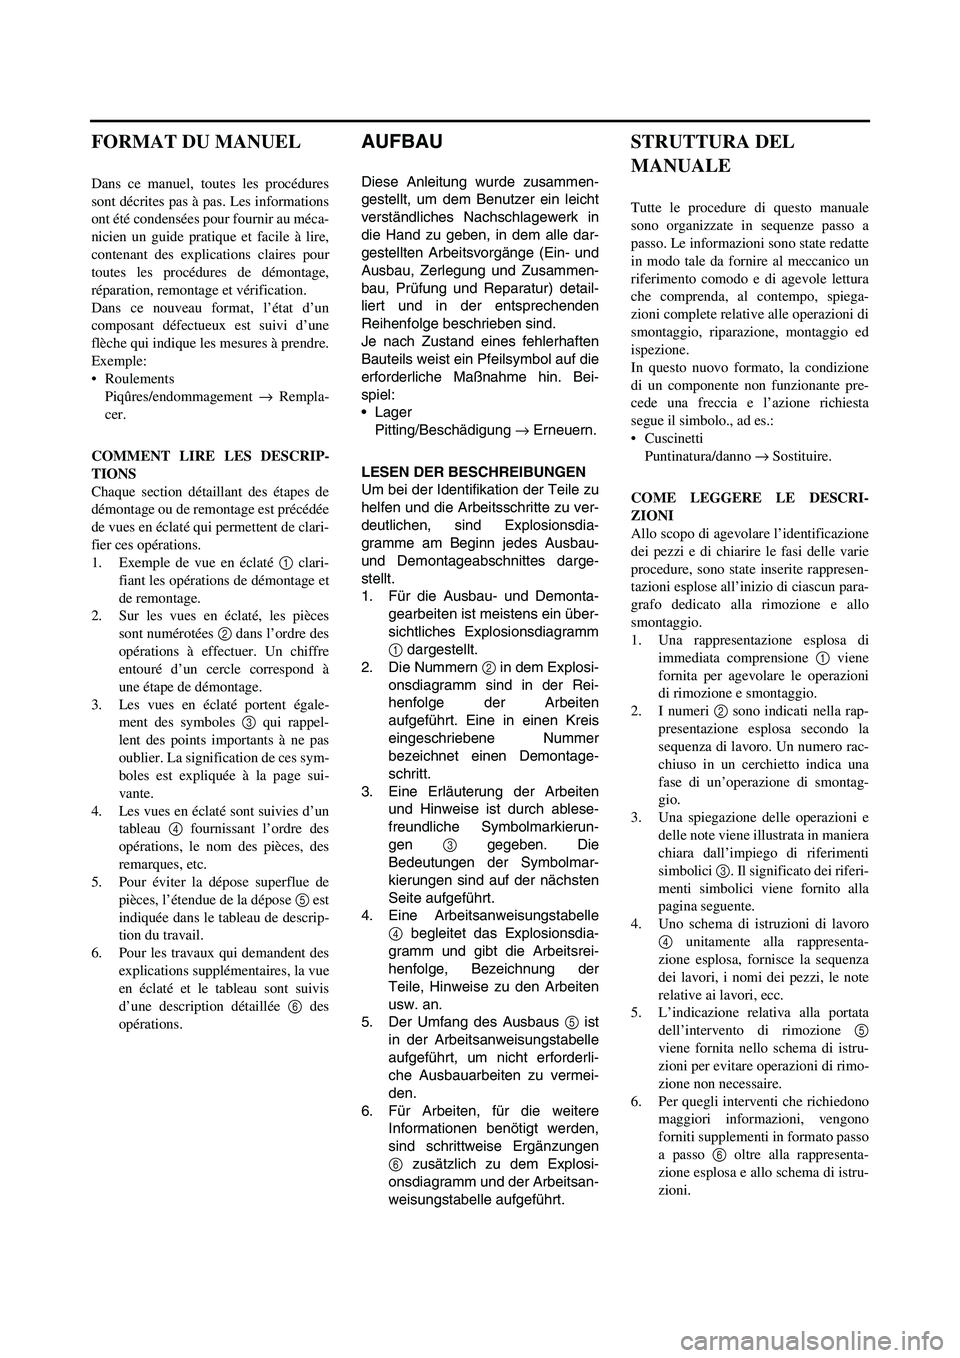 YAMAHA YZ250F 2007  Notices Demploi (in French) AUFBAU
Diese Anleitung wurde zusammen-
gestellt, um dem Benutzer ein leicht
verständliches Nachschlagewerk in
die Hand zu geben, in dem alle dar-
gestellten Arbeitsvorgänge (Ein- und
Ausbau, Zerlegu